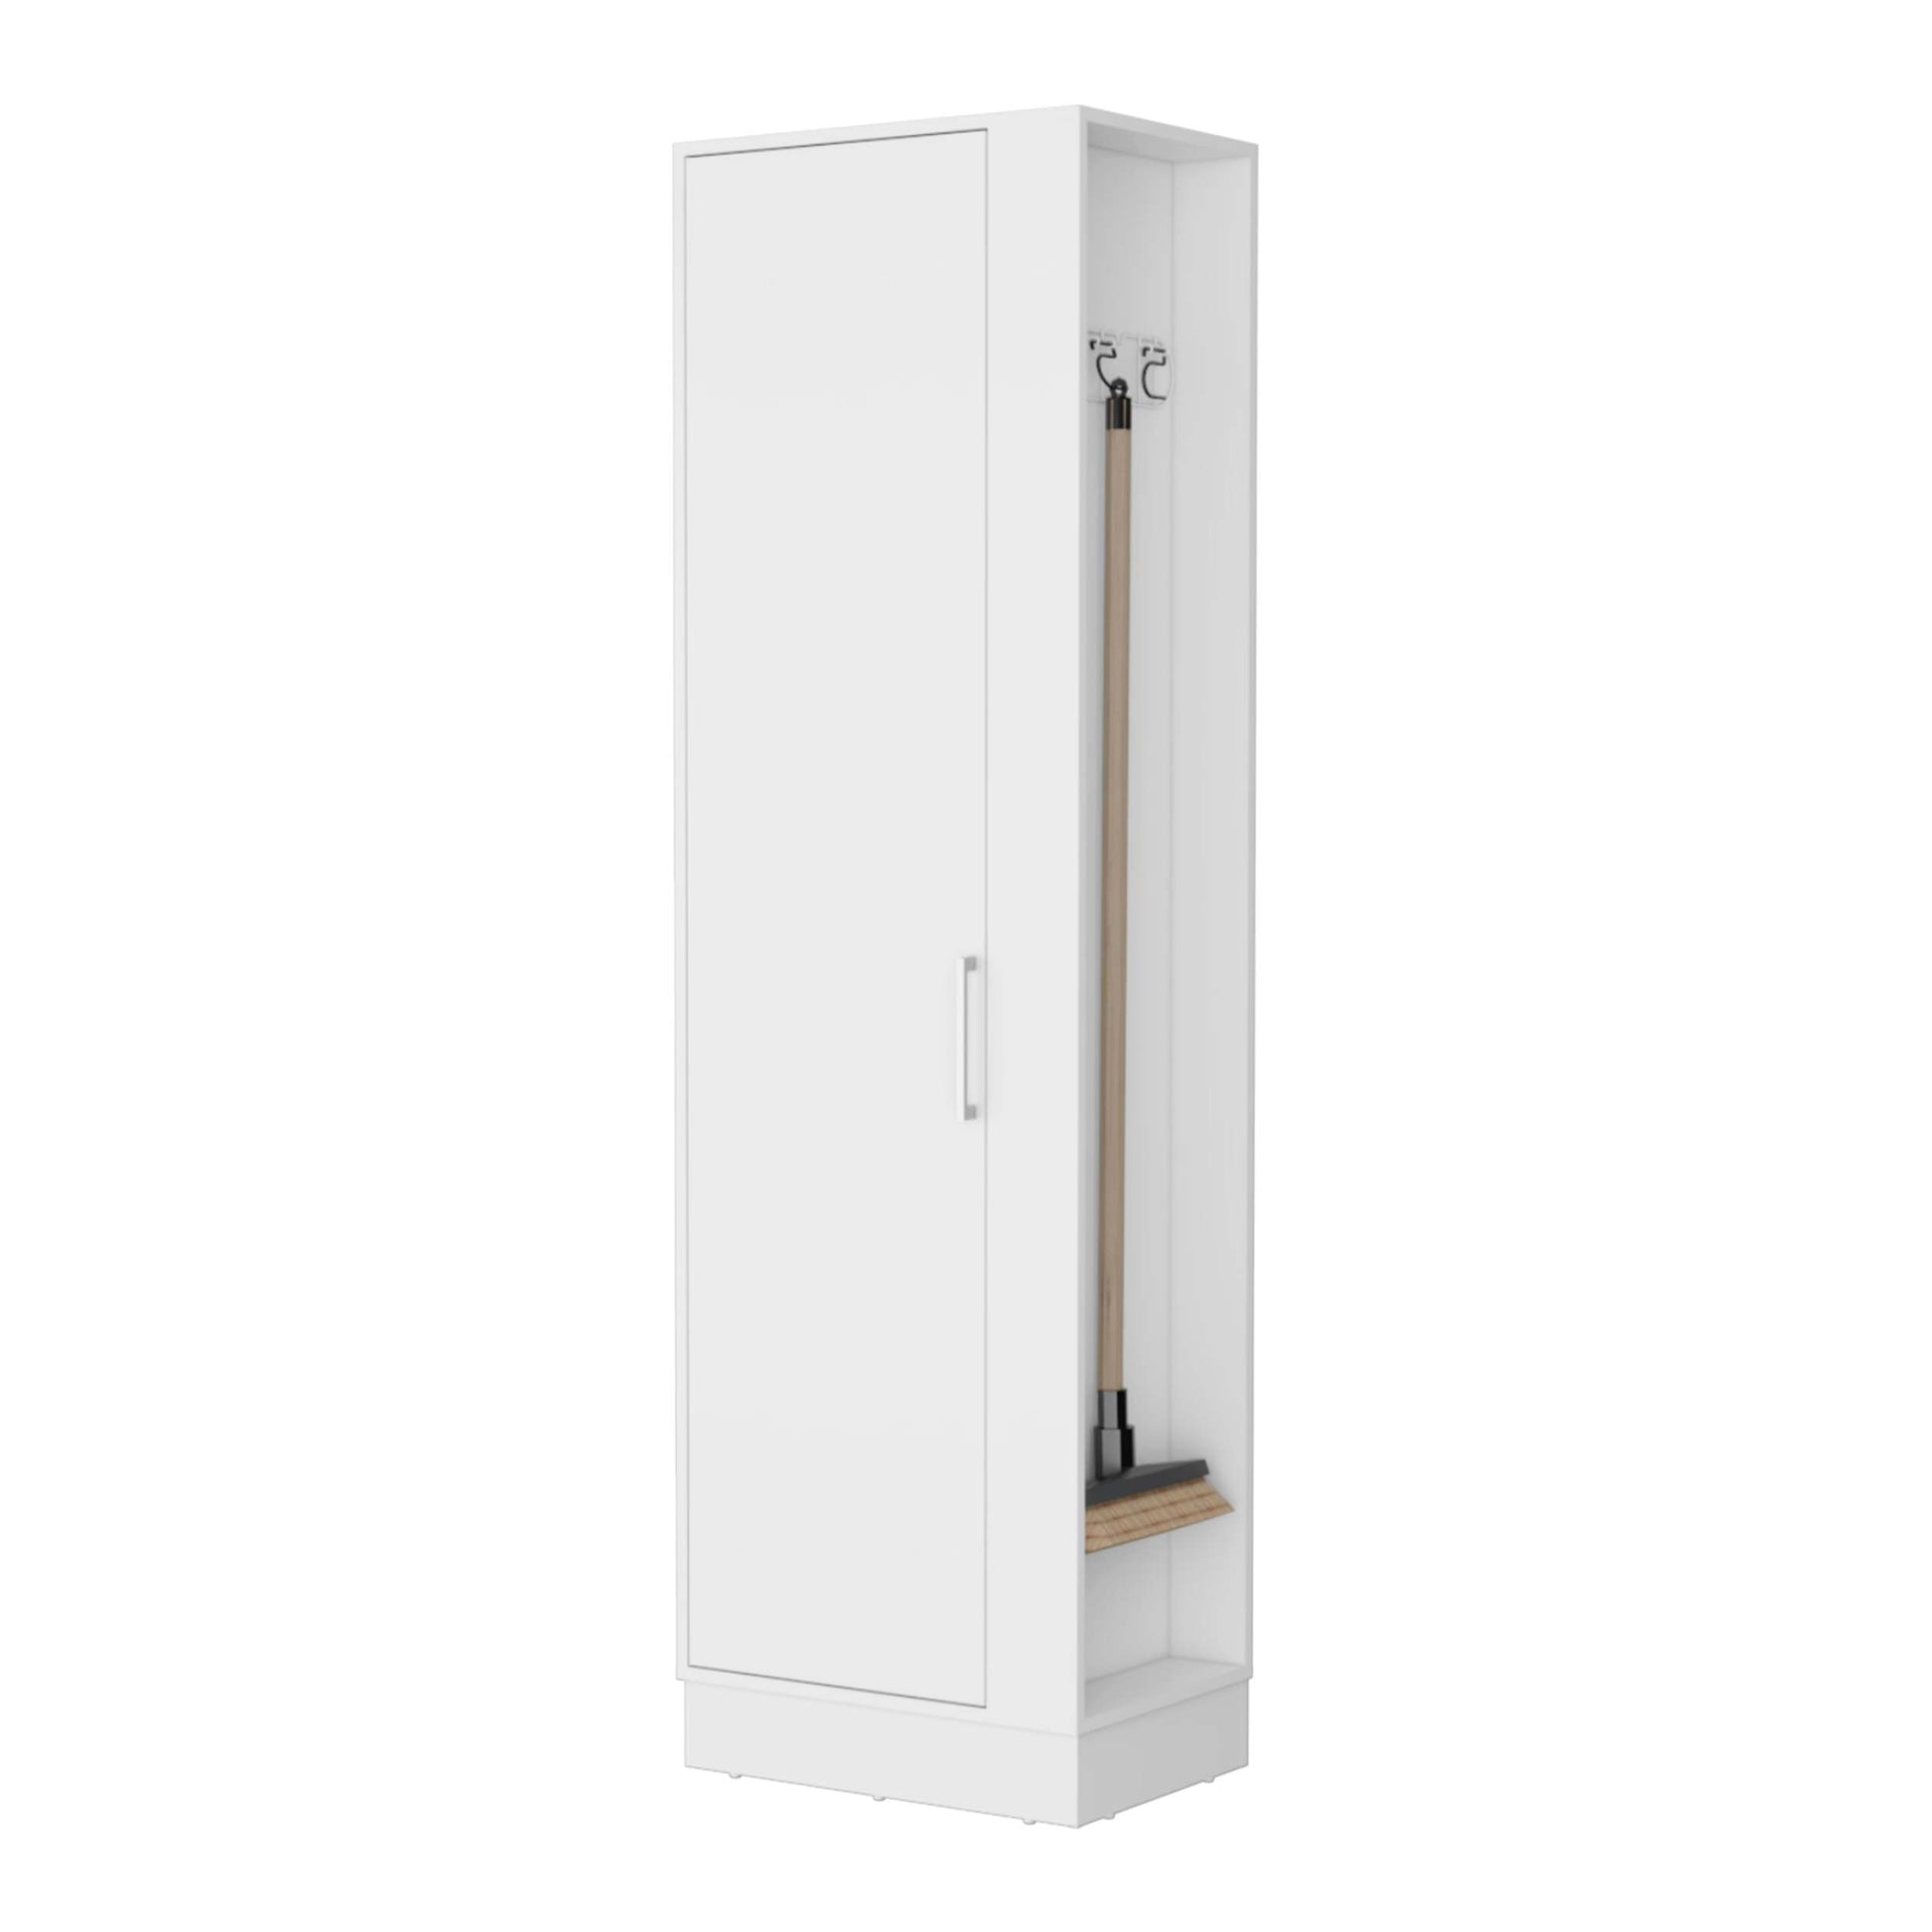 Nampa Storage Cabinet, Single Door, Broom Hangers